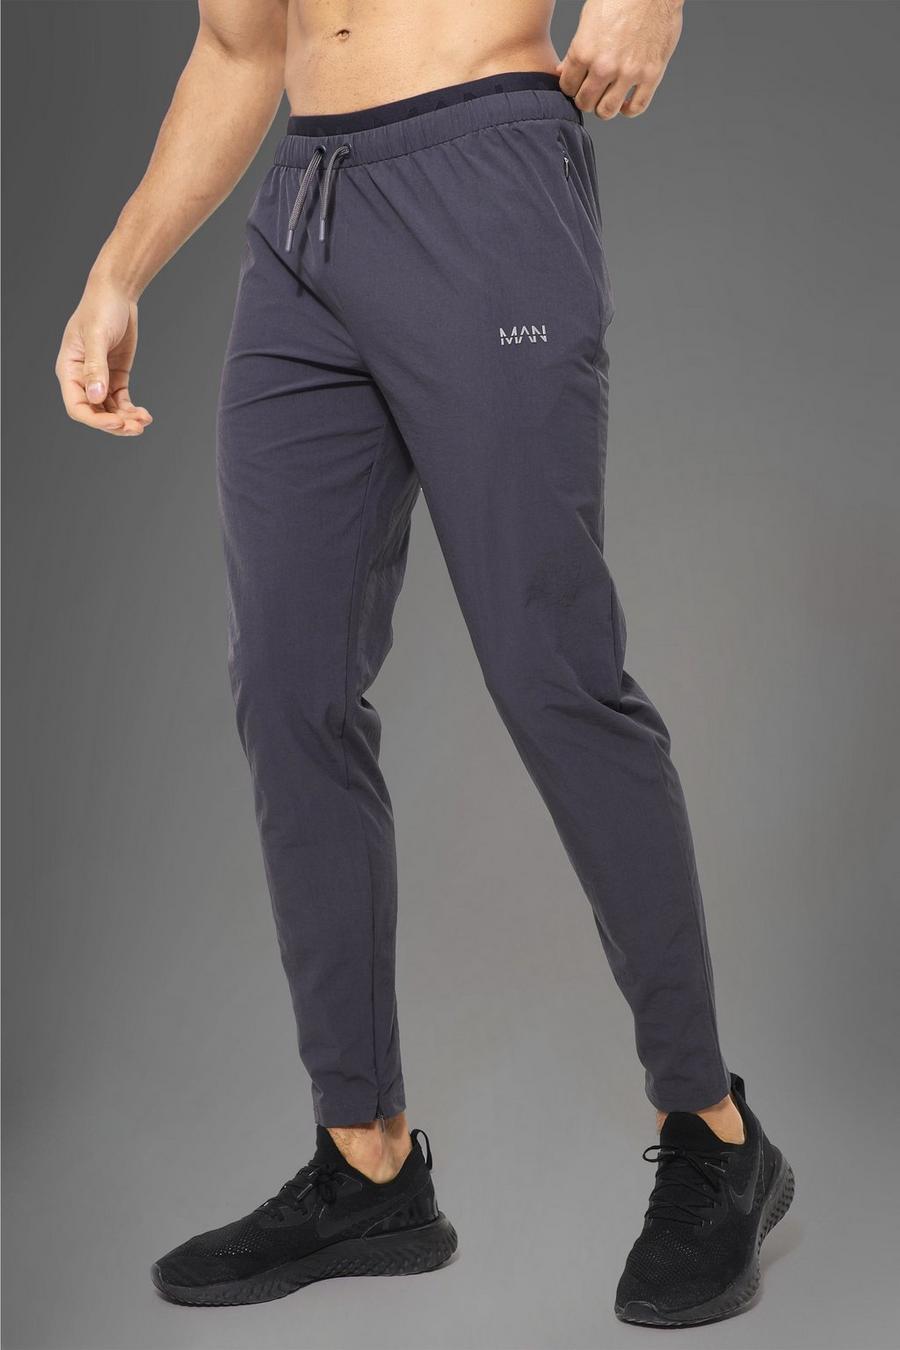 Pantaloni tuta Man Active Gym con dettagli in vita, Charcoal grey